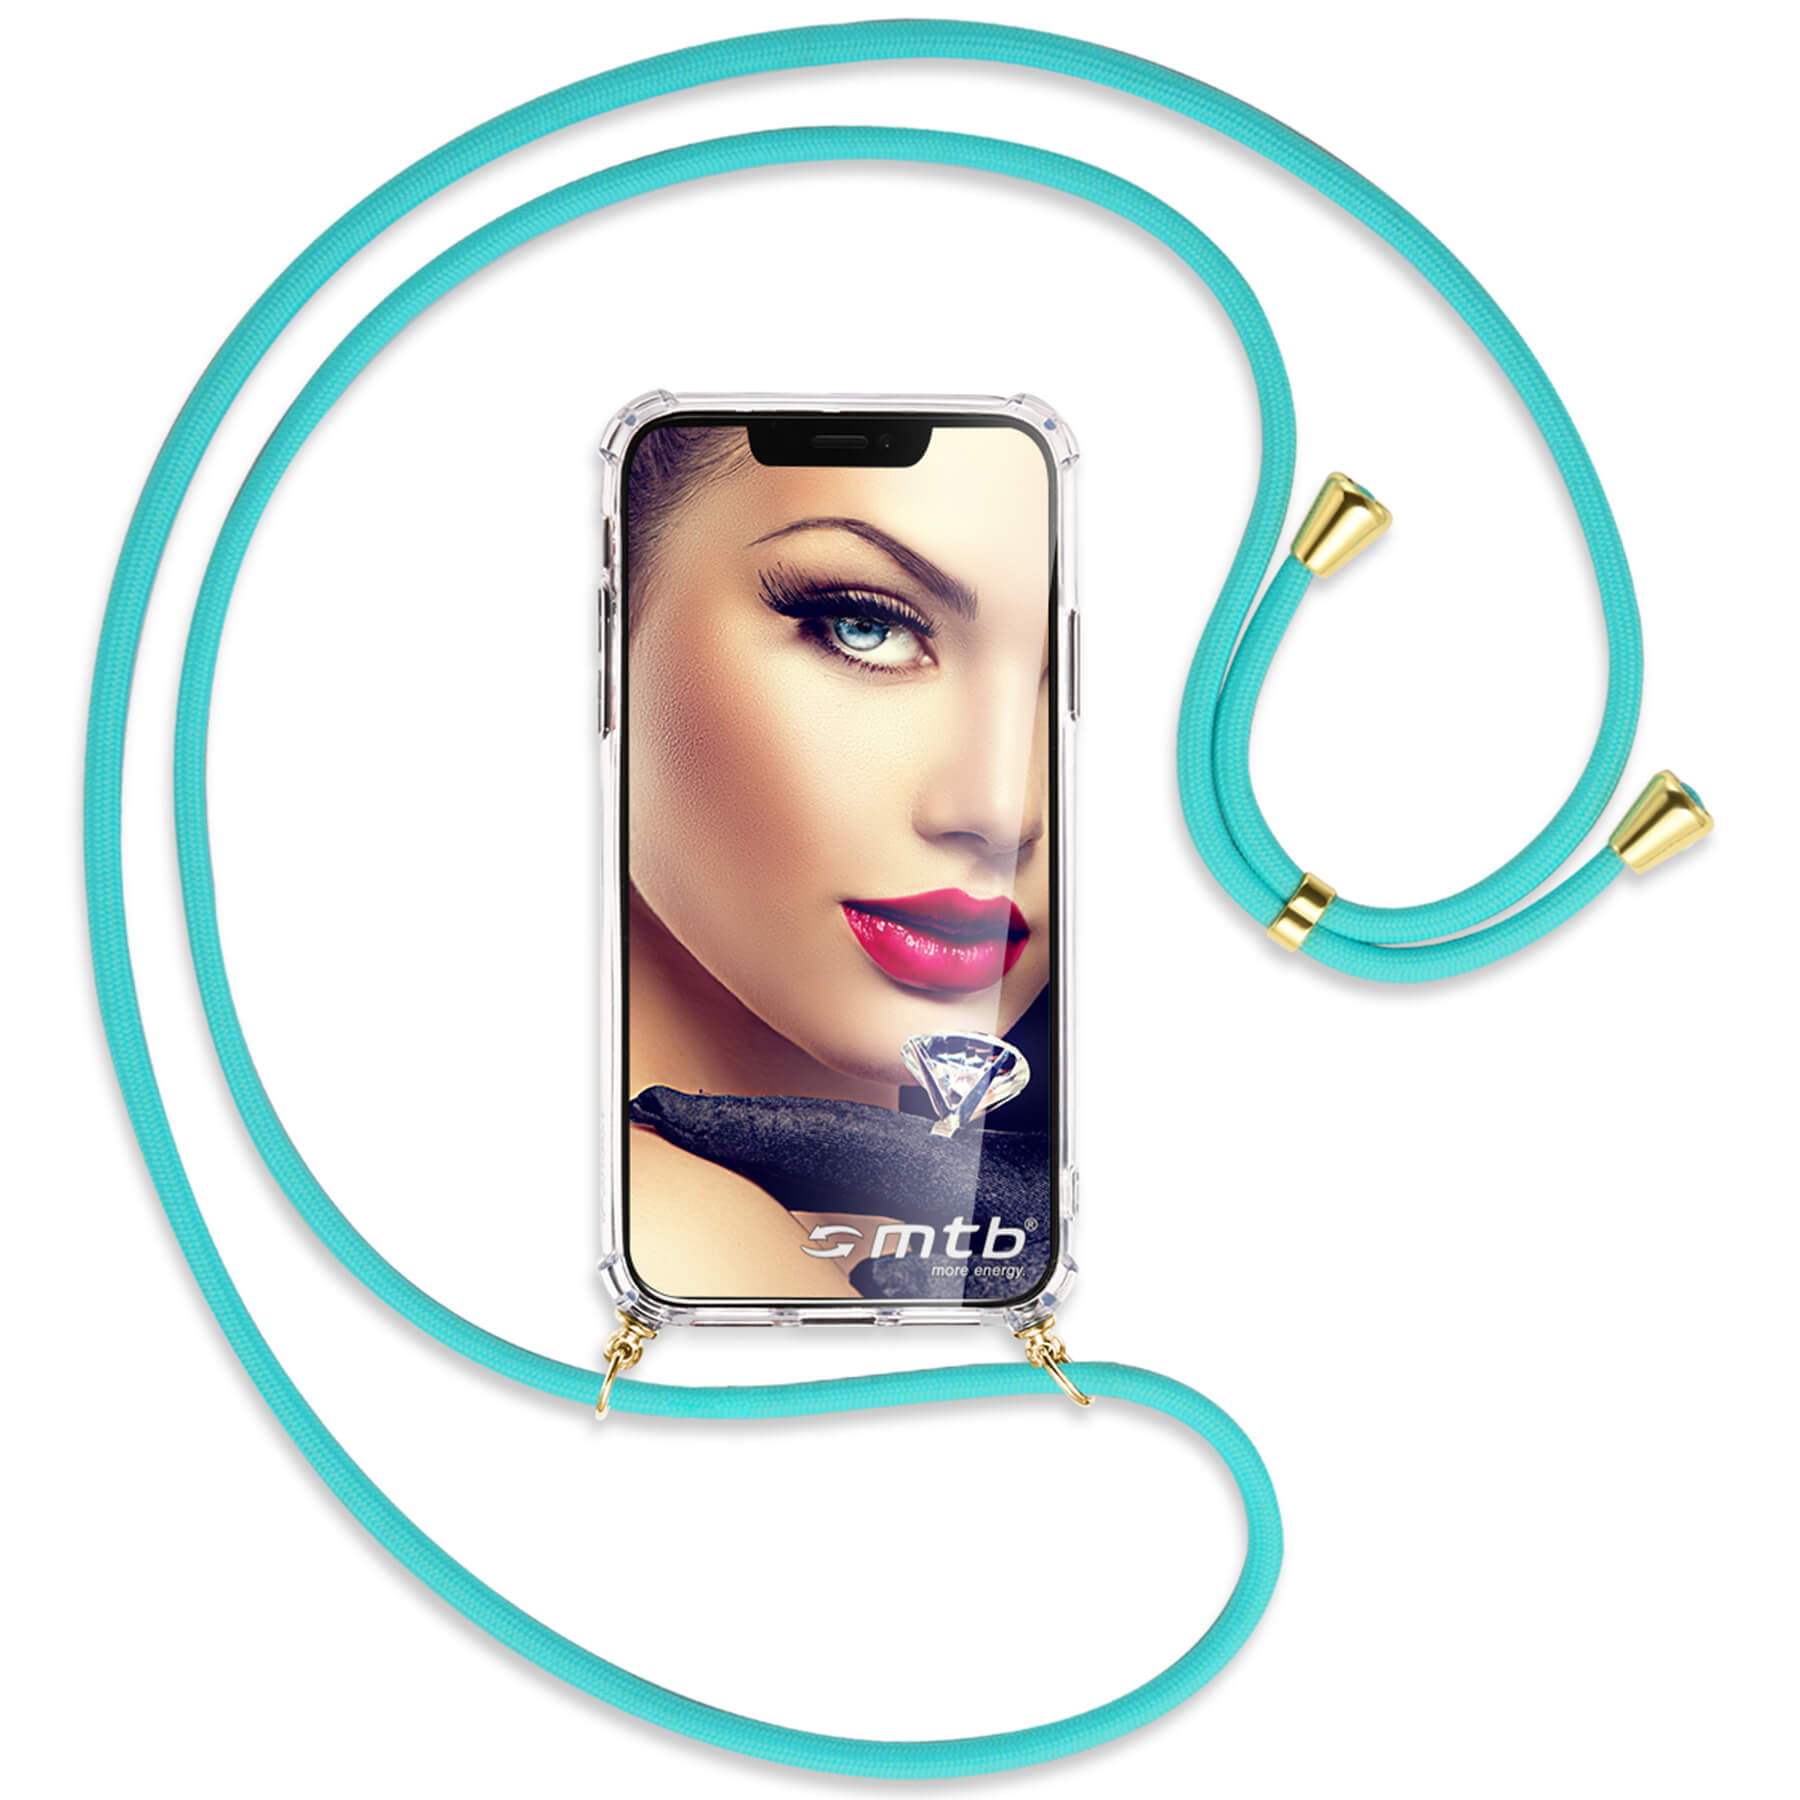 MTB MORE ENERGY Umhänge-Hülle mit Phone 7 gold RoG Backcover, Türkis / Ultimate, Kordel, Asus